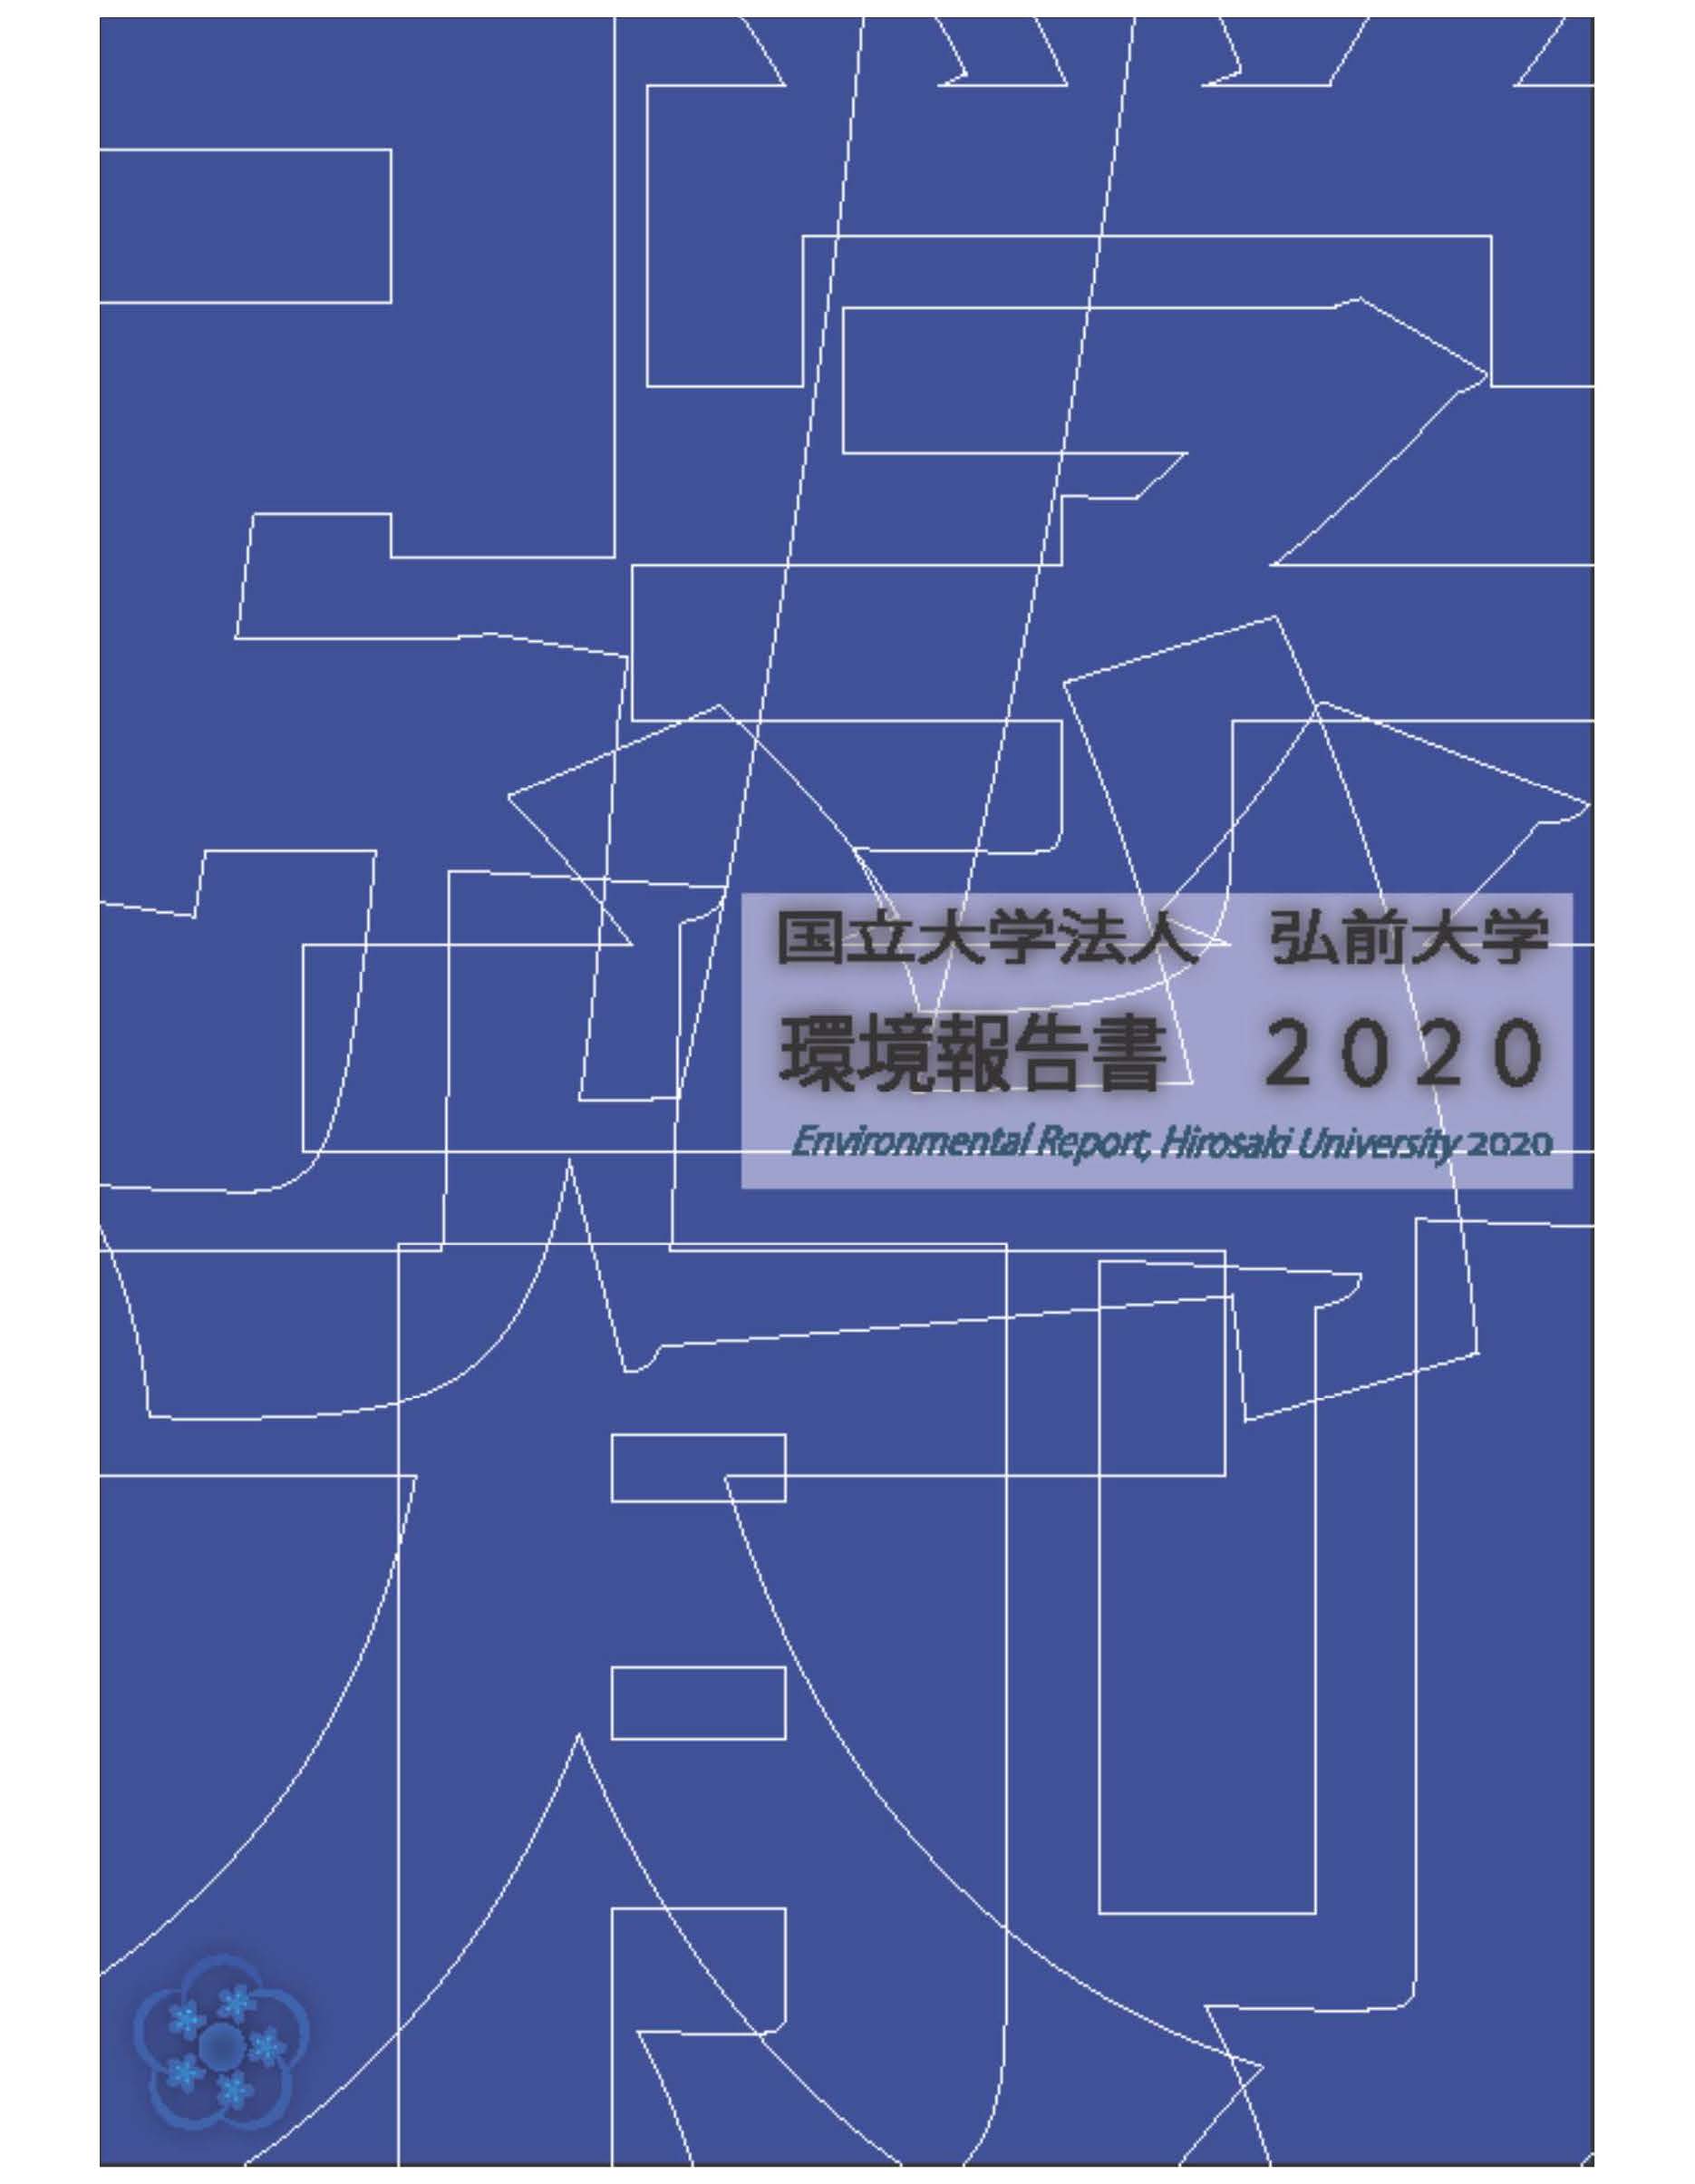 弘前大学環境報告書２０２０